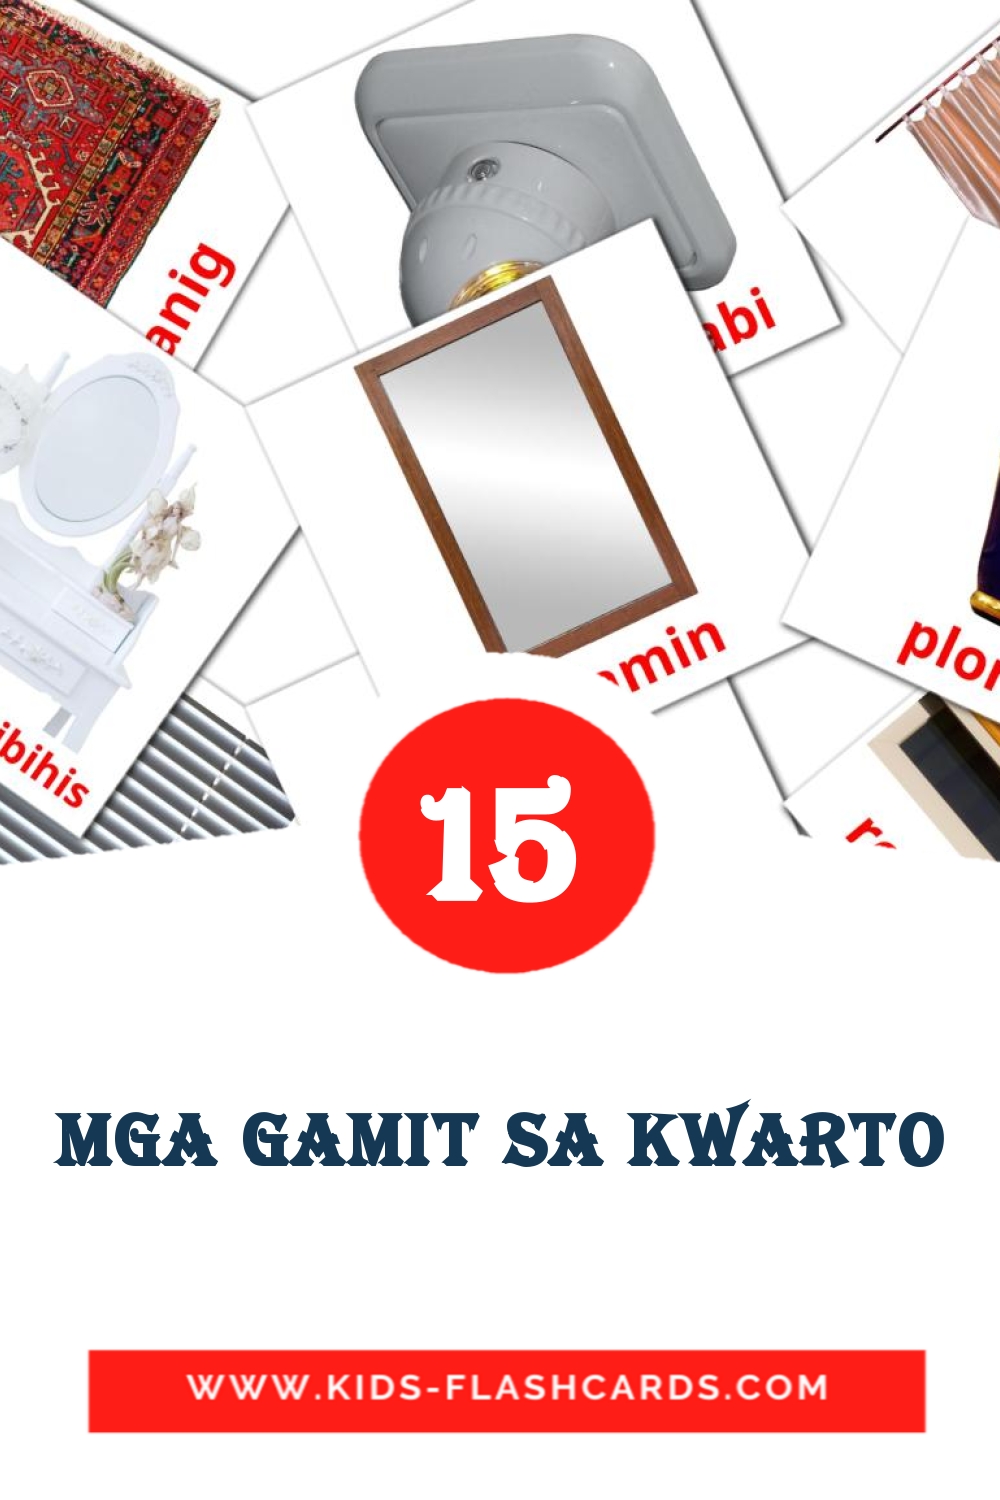 15 carte illustrate di Mga gamit sa kwarto per la scuola materna in filippino